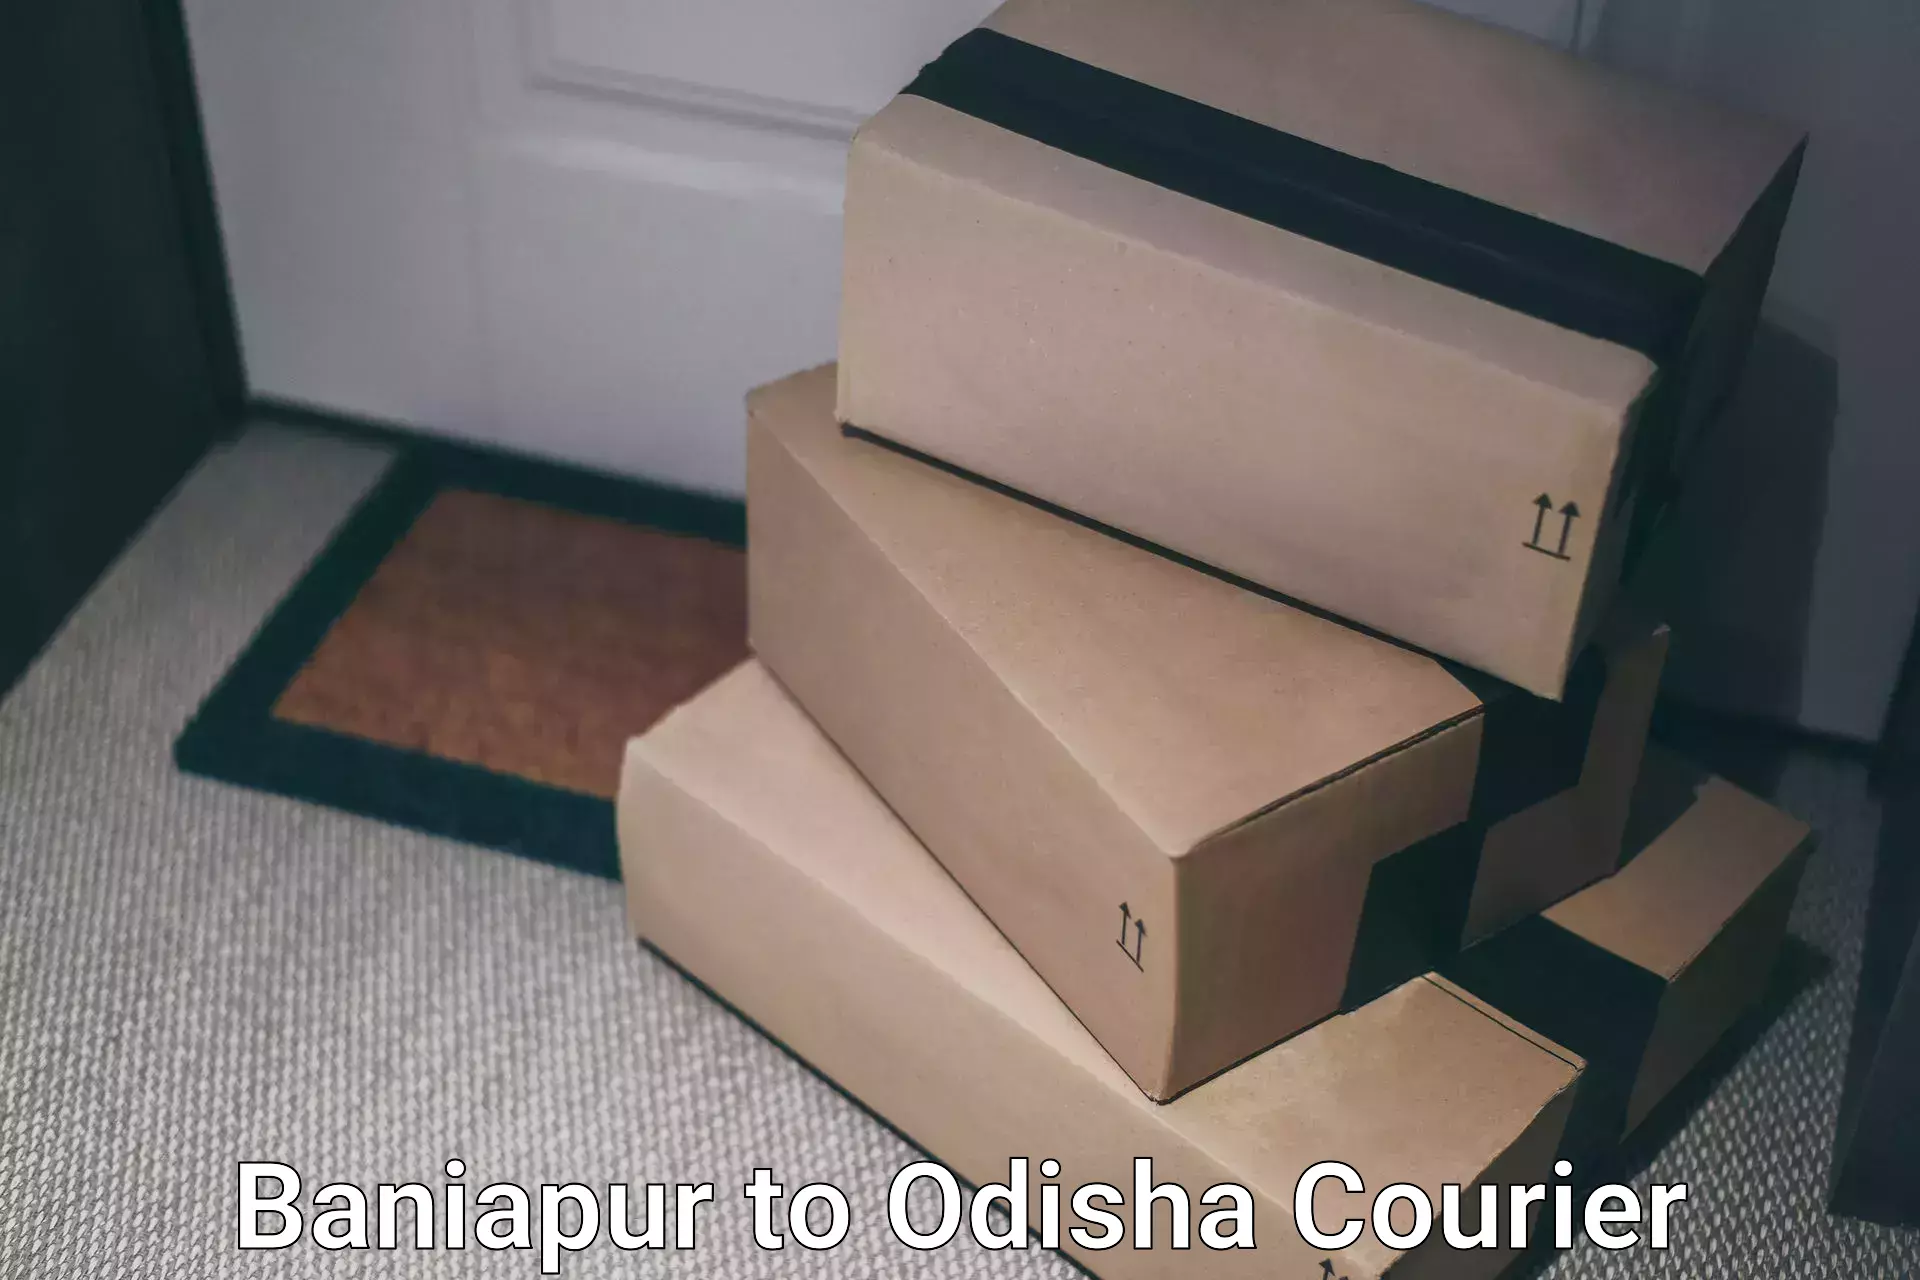 Digital courier platforms Baniapur to Odisha